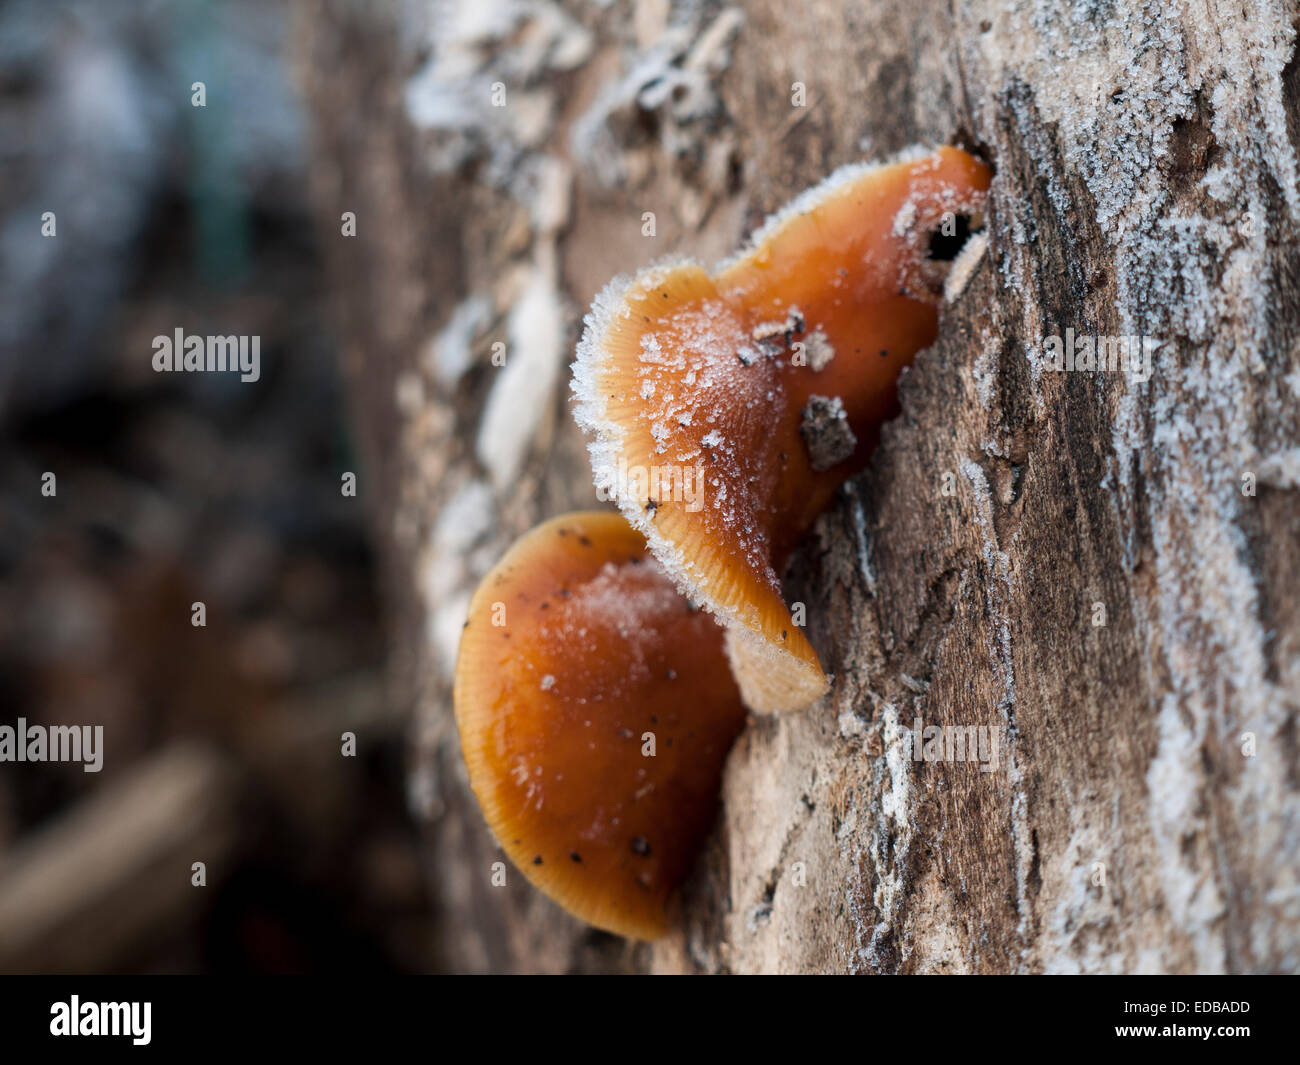 Colybie a - la queue de velours champignon peut souvent être trouvé sur les souches en décomposition tout au long de l'hiver. Considéré comme comestible. Banque D'Images